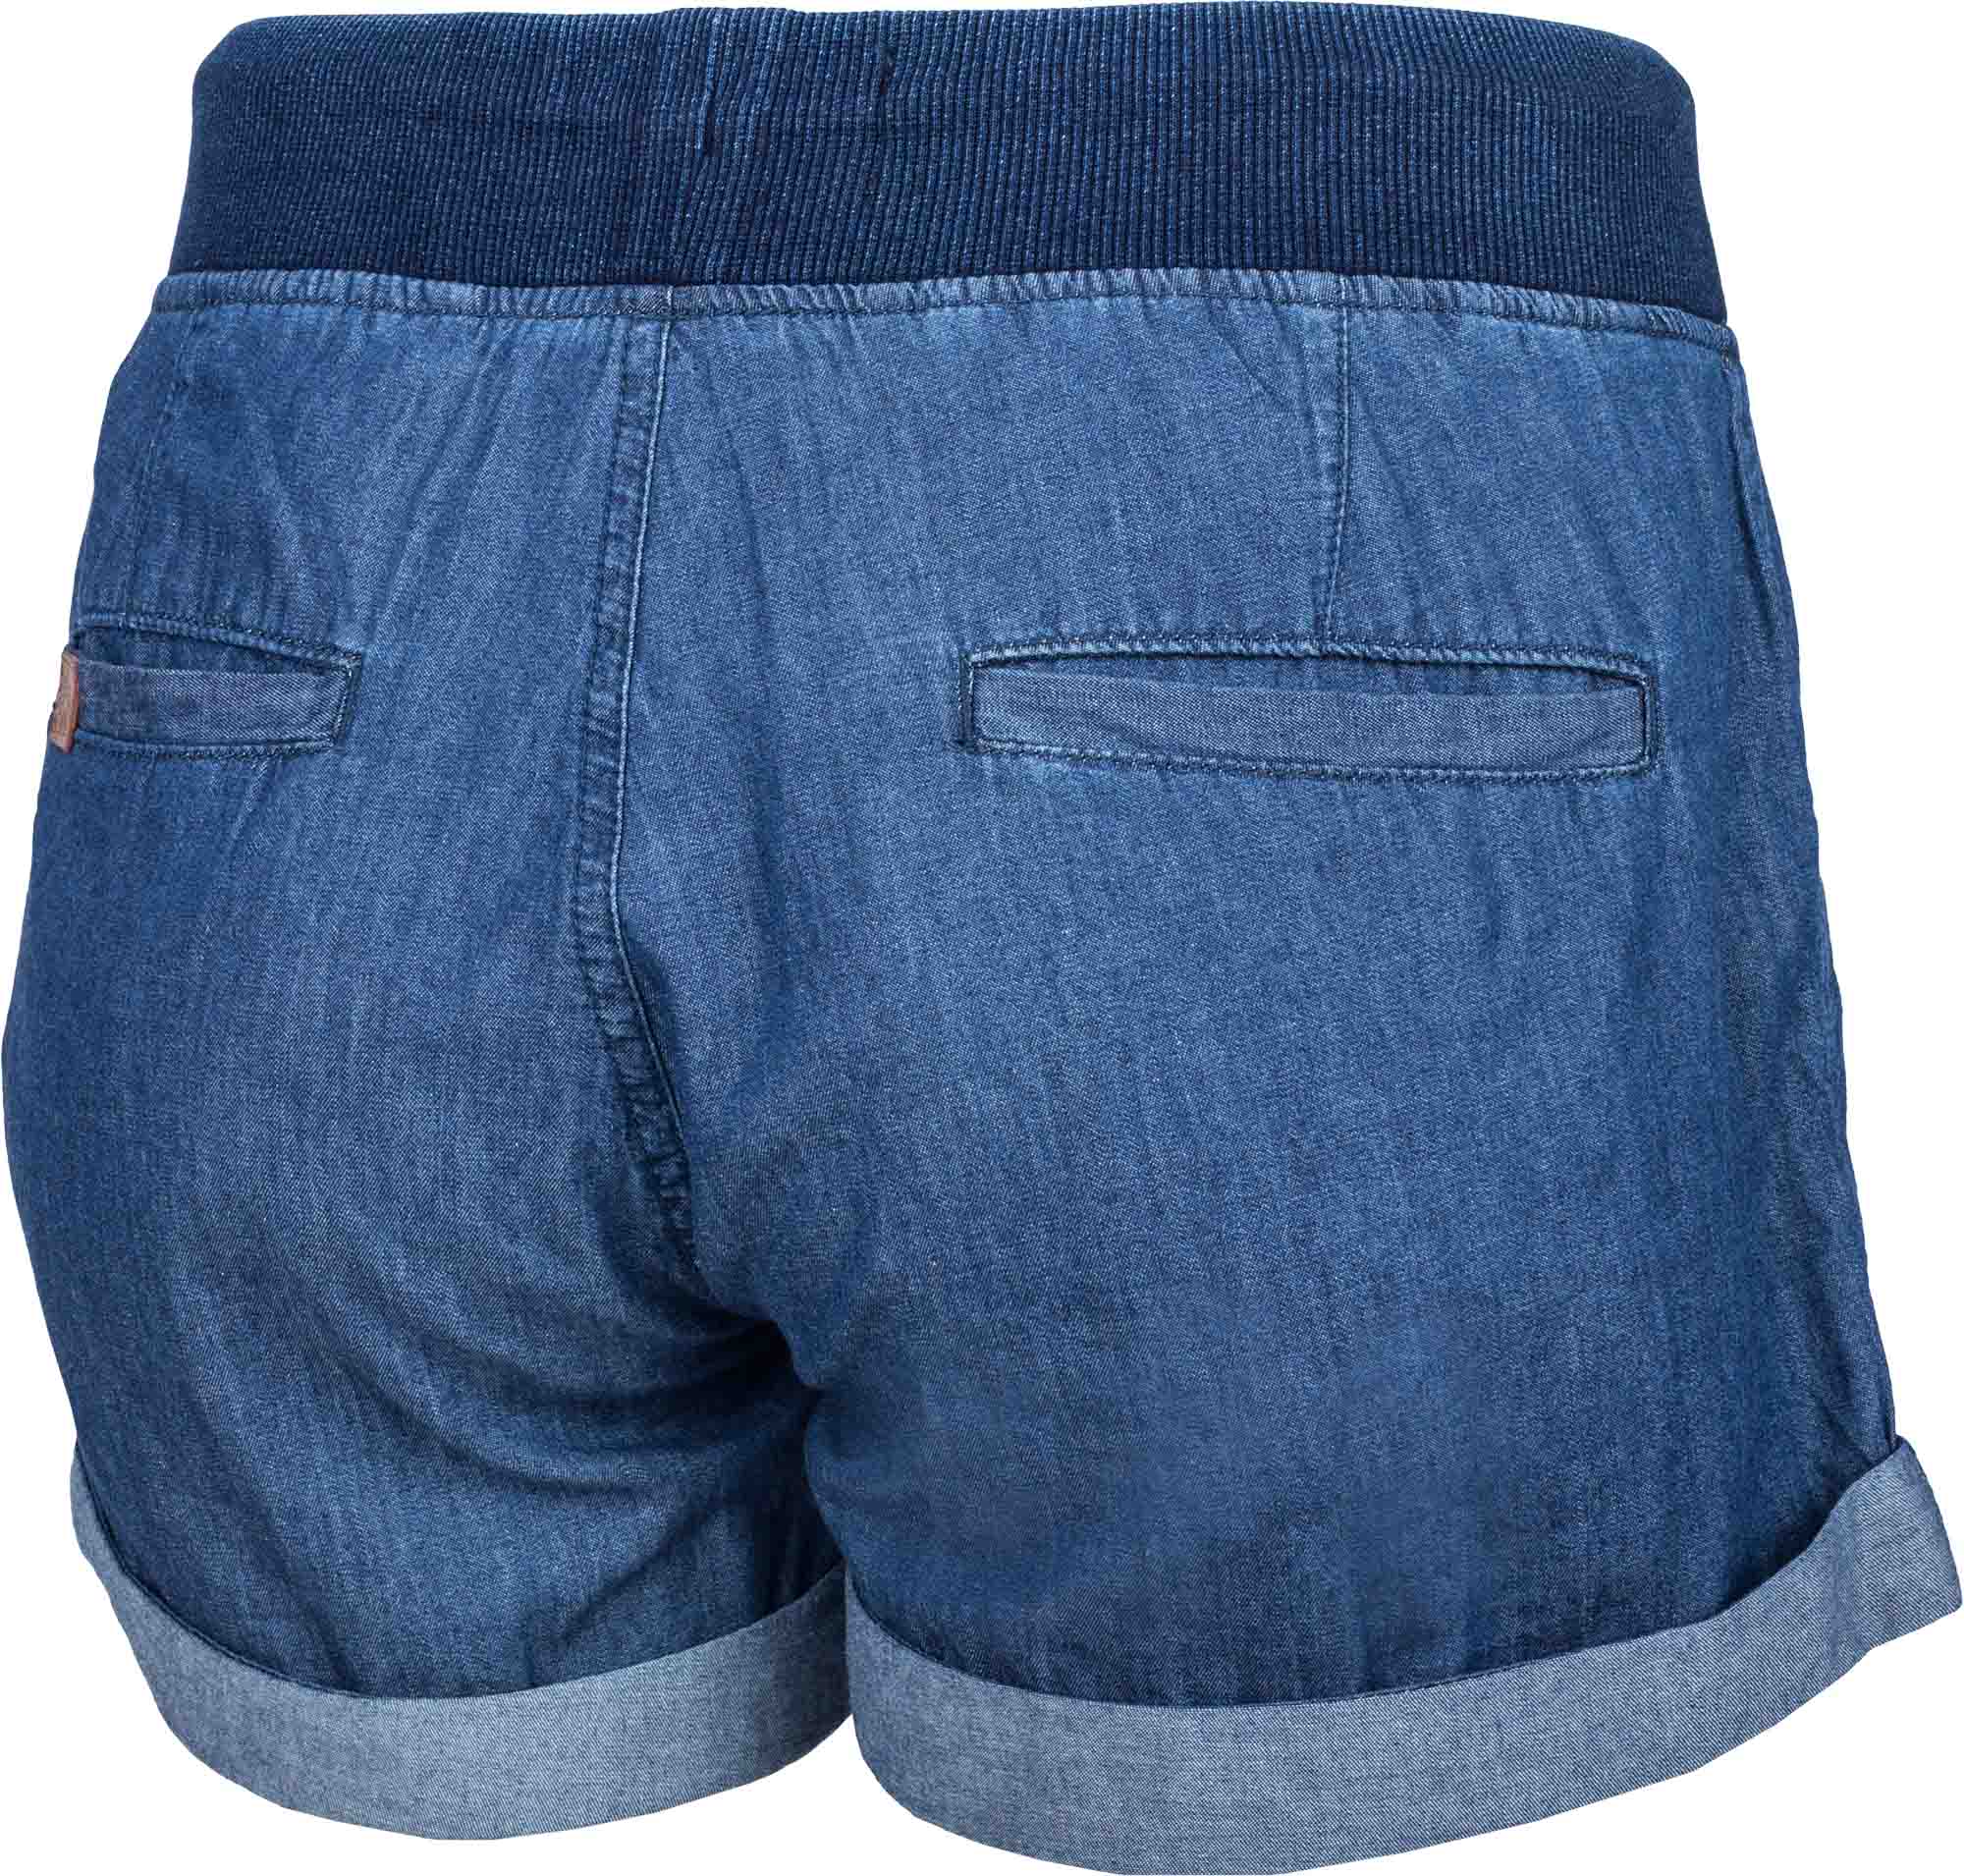 Women's jean shorts